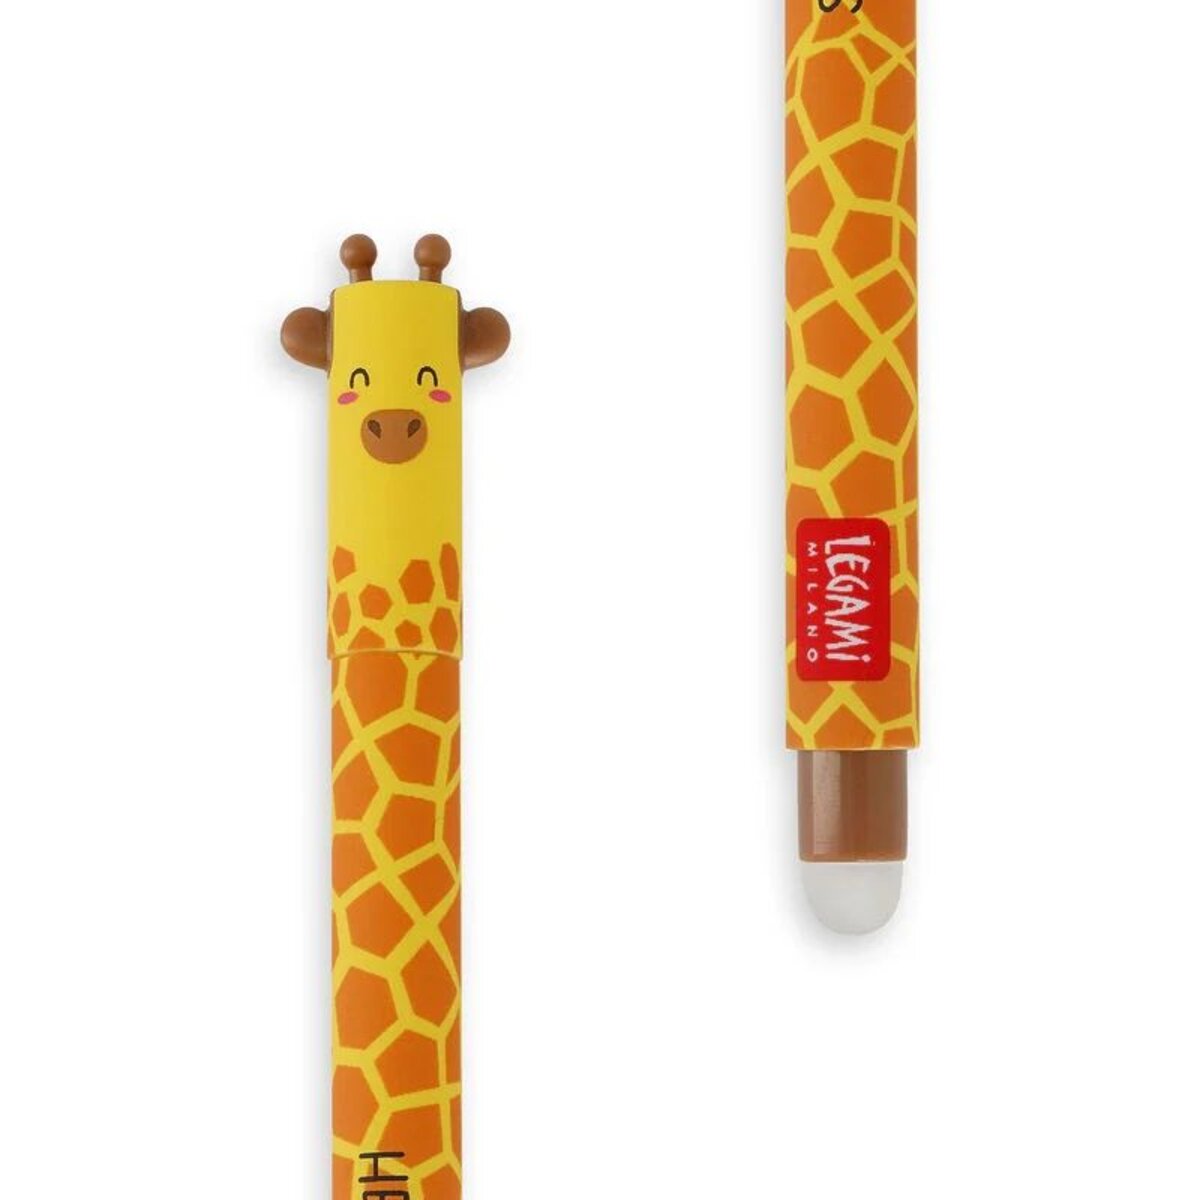 Legami Löschbarer Gelstift - Giraffe